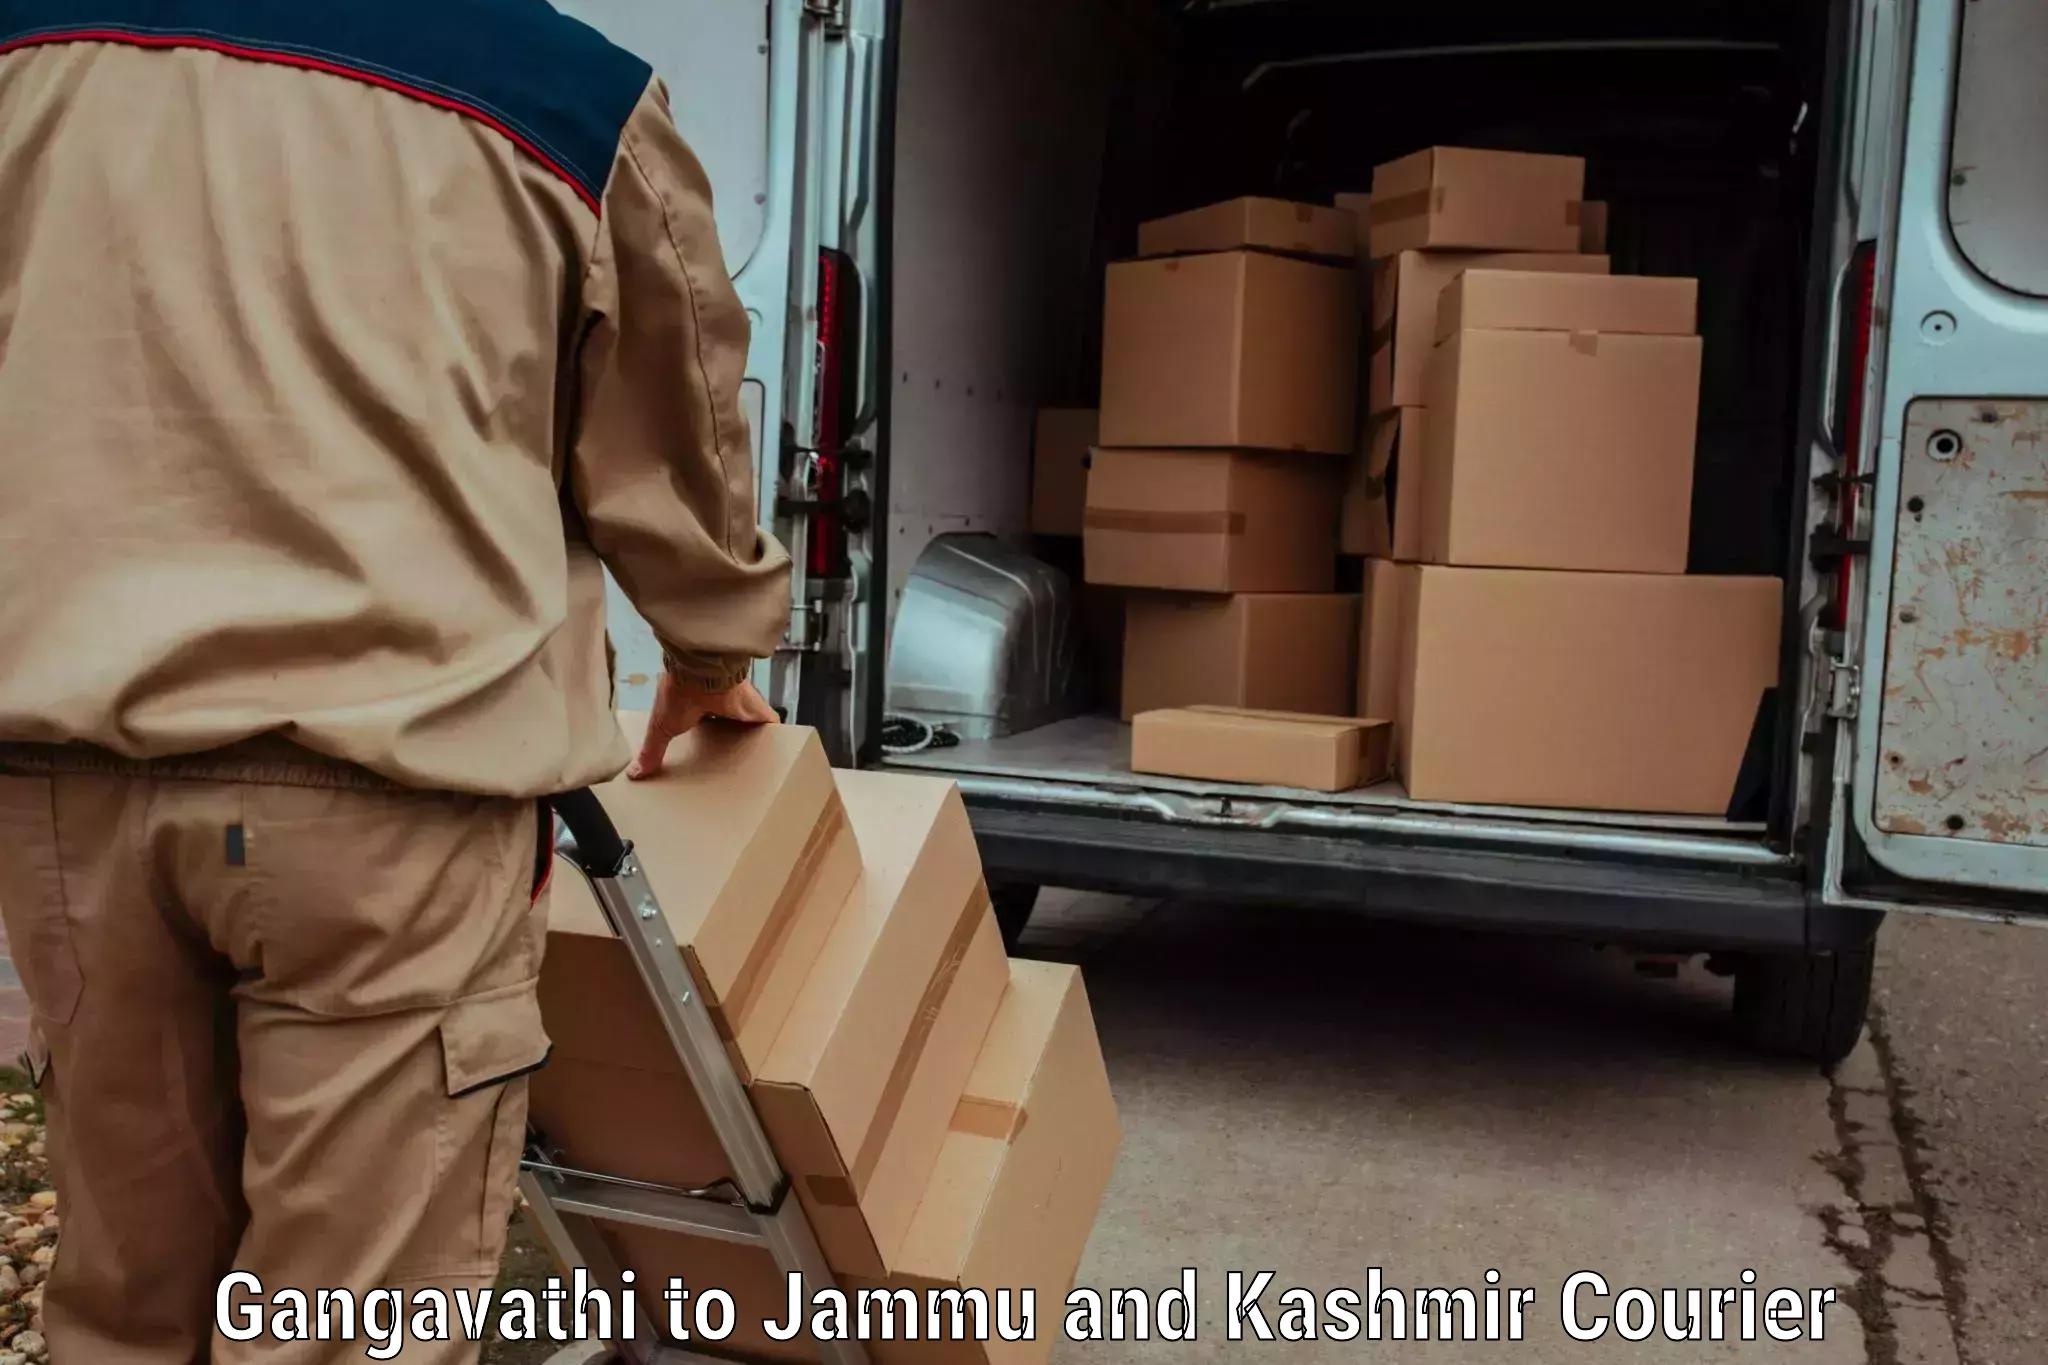 Rapid shipping services Gangavathi to Rajouri